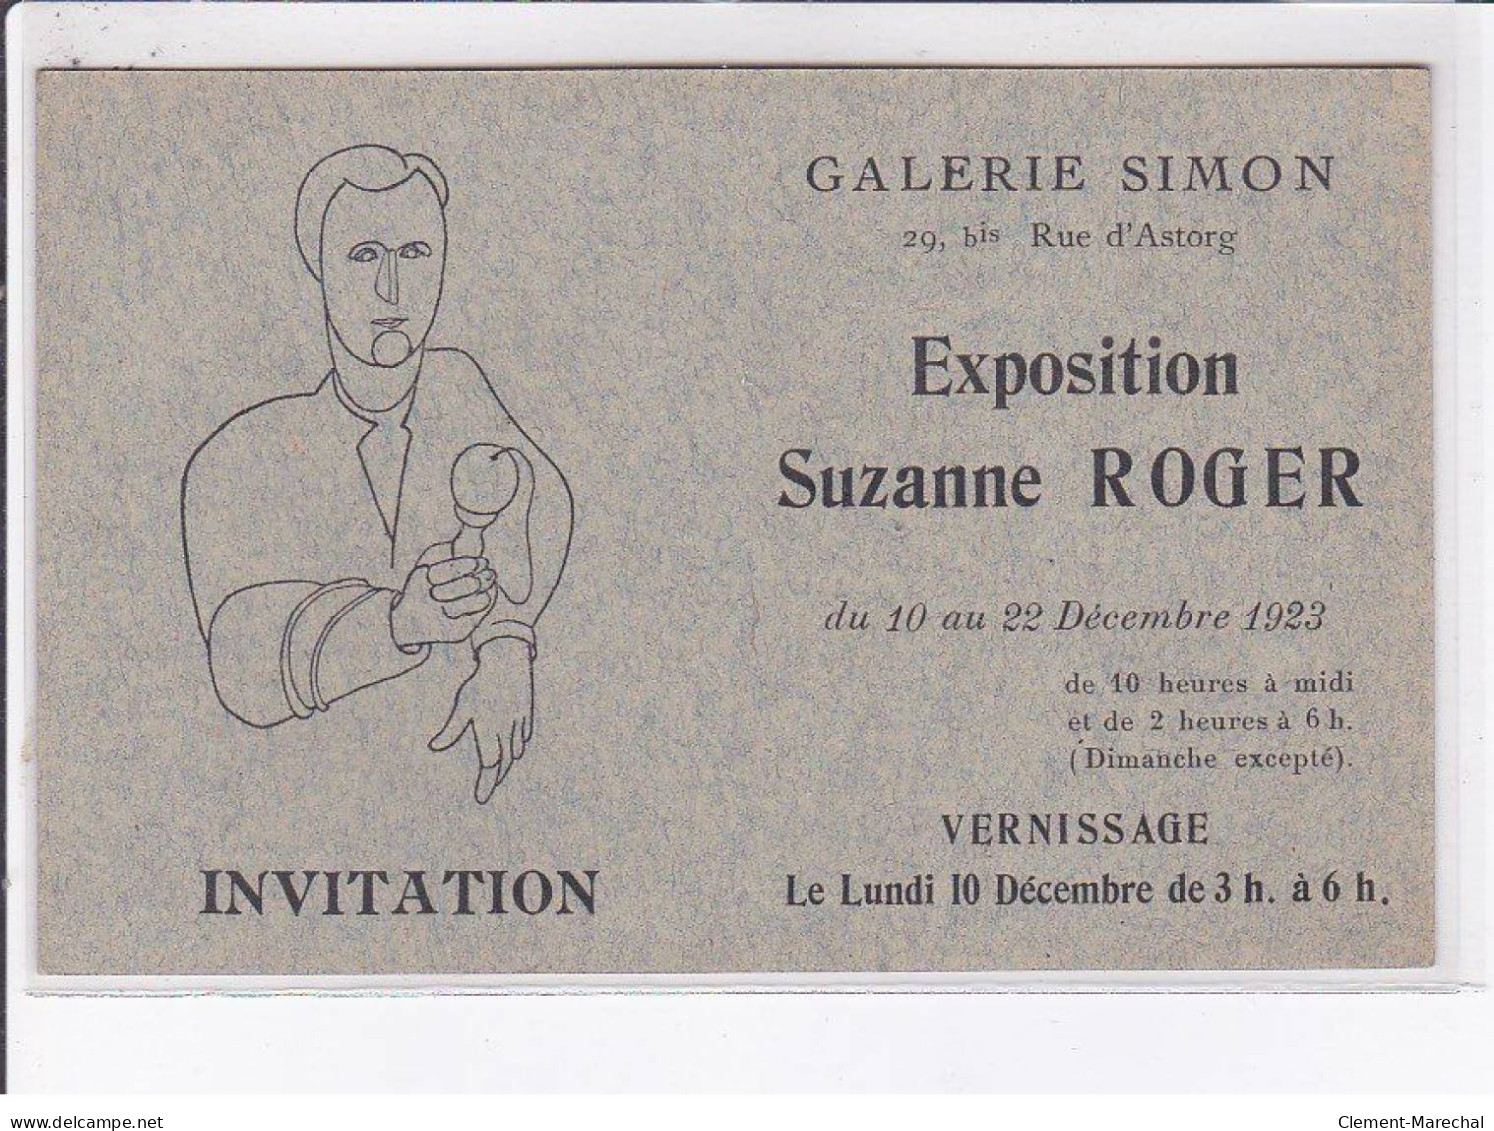 PUBLICITE: Invitation, Galerie Simon, Exposition Suzanne Roger, Vernissage - Très Bon état - Publicidad